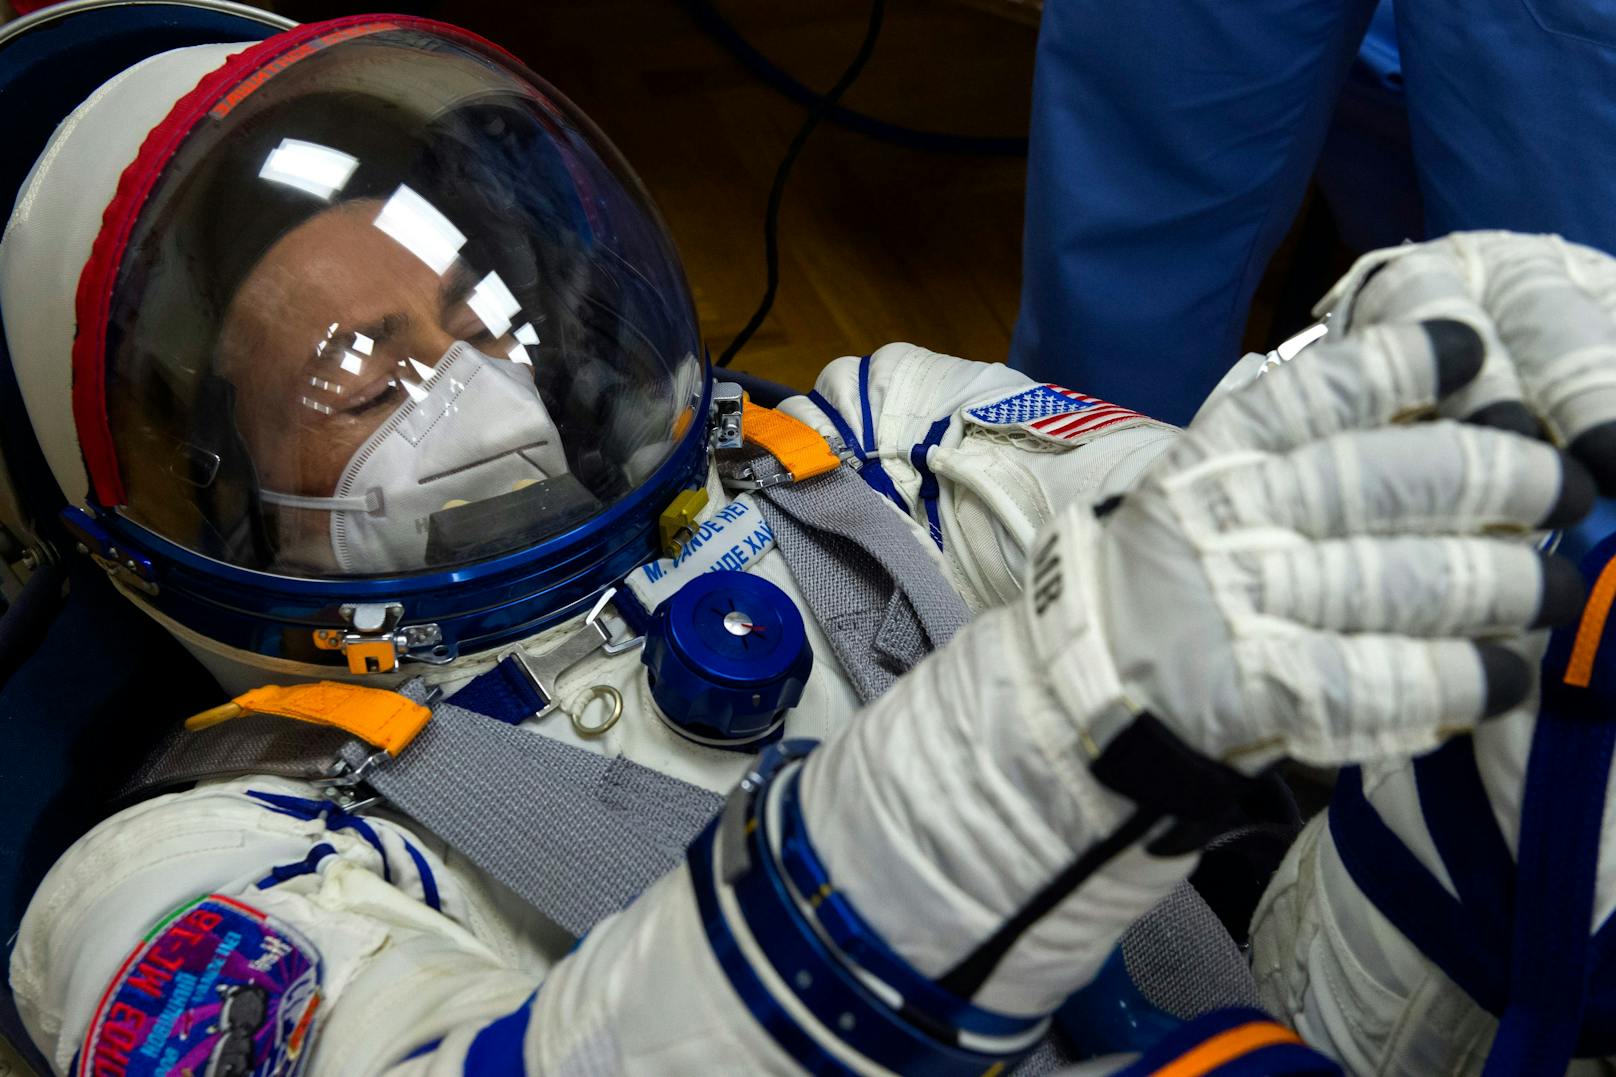 Weil sich Raumfahrer die Anzüge teilen müssen, wird jetzt nach neuen innovativen Materialien gesucht.